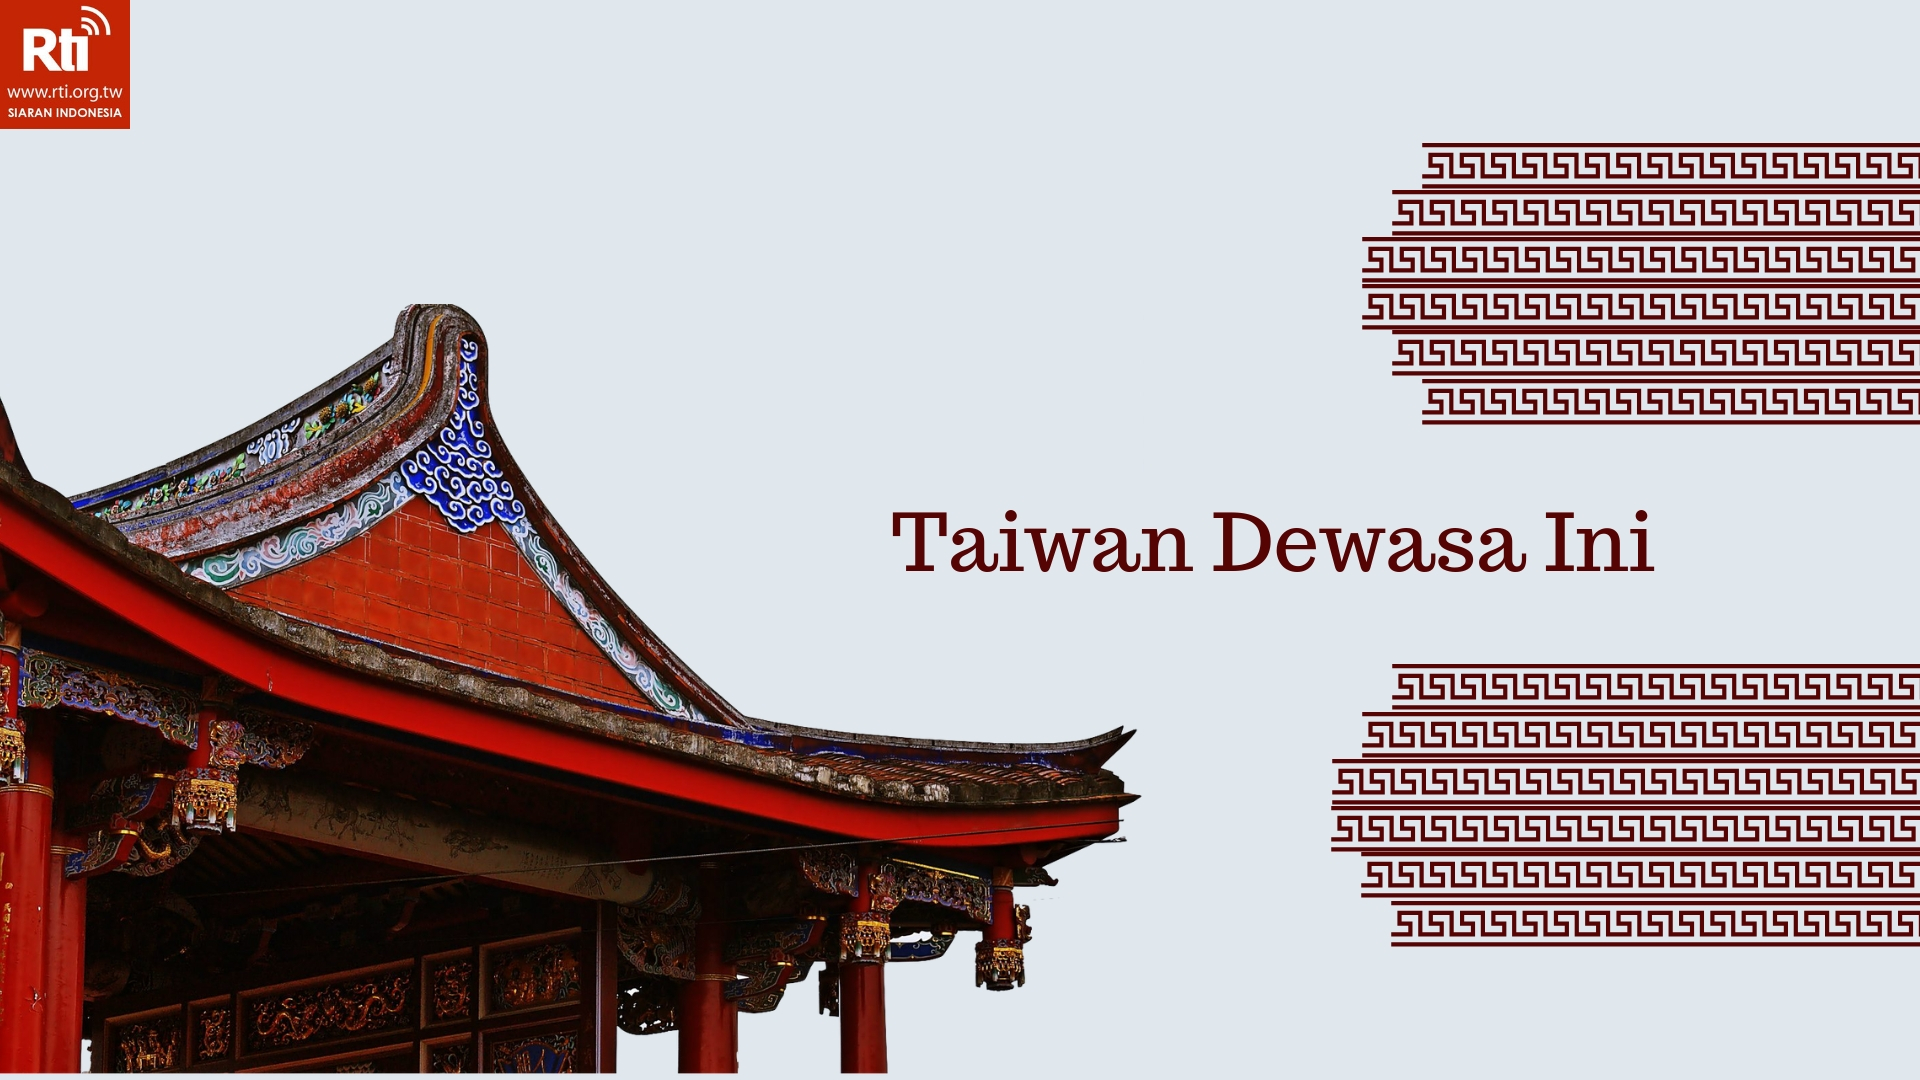 Taiwan Dewasa Ini - 2021-11-27